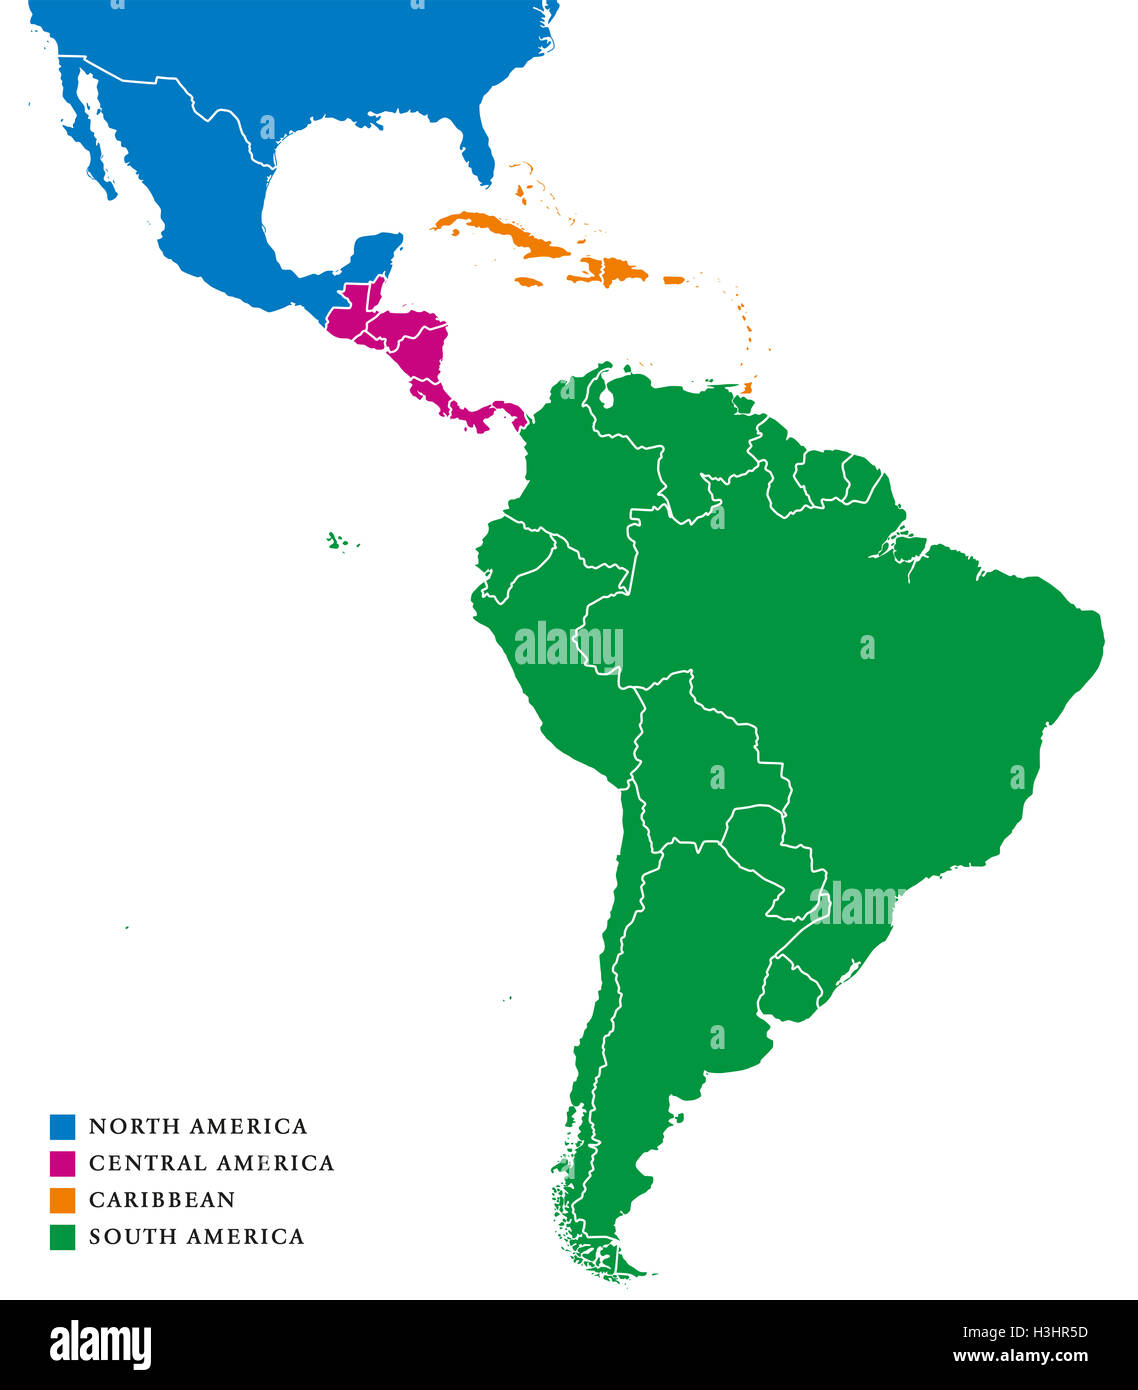 Mapa De Las Subregiones De America Latina Las Subregiones Del Caribe Norte Centro Y Sur America En Diferentes Colores Y Con Fronteras H3hr5d 